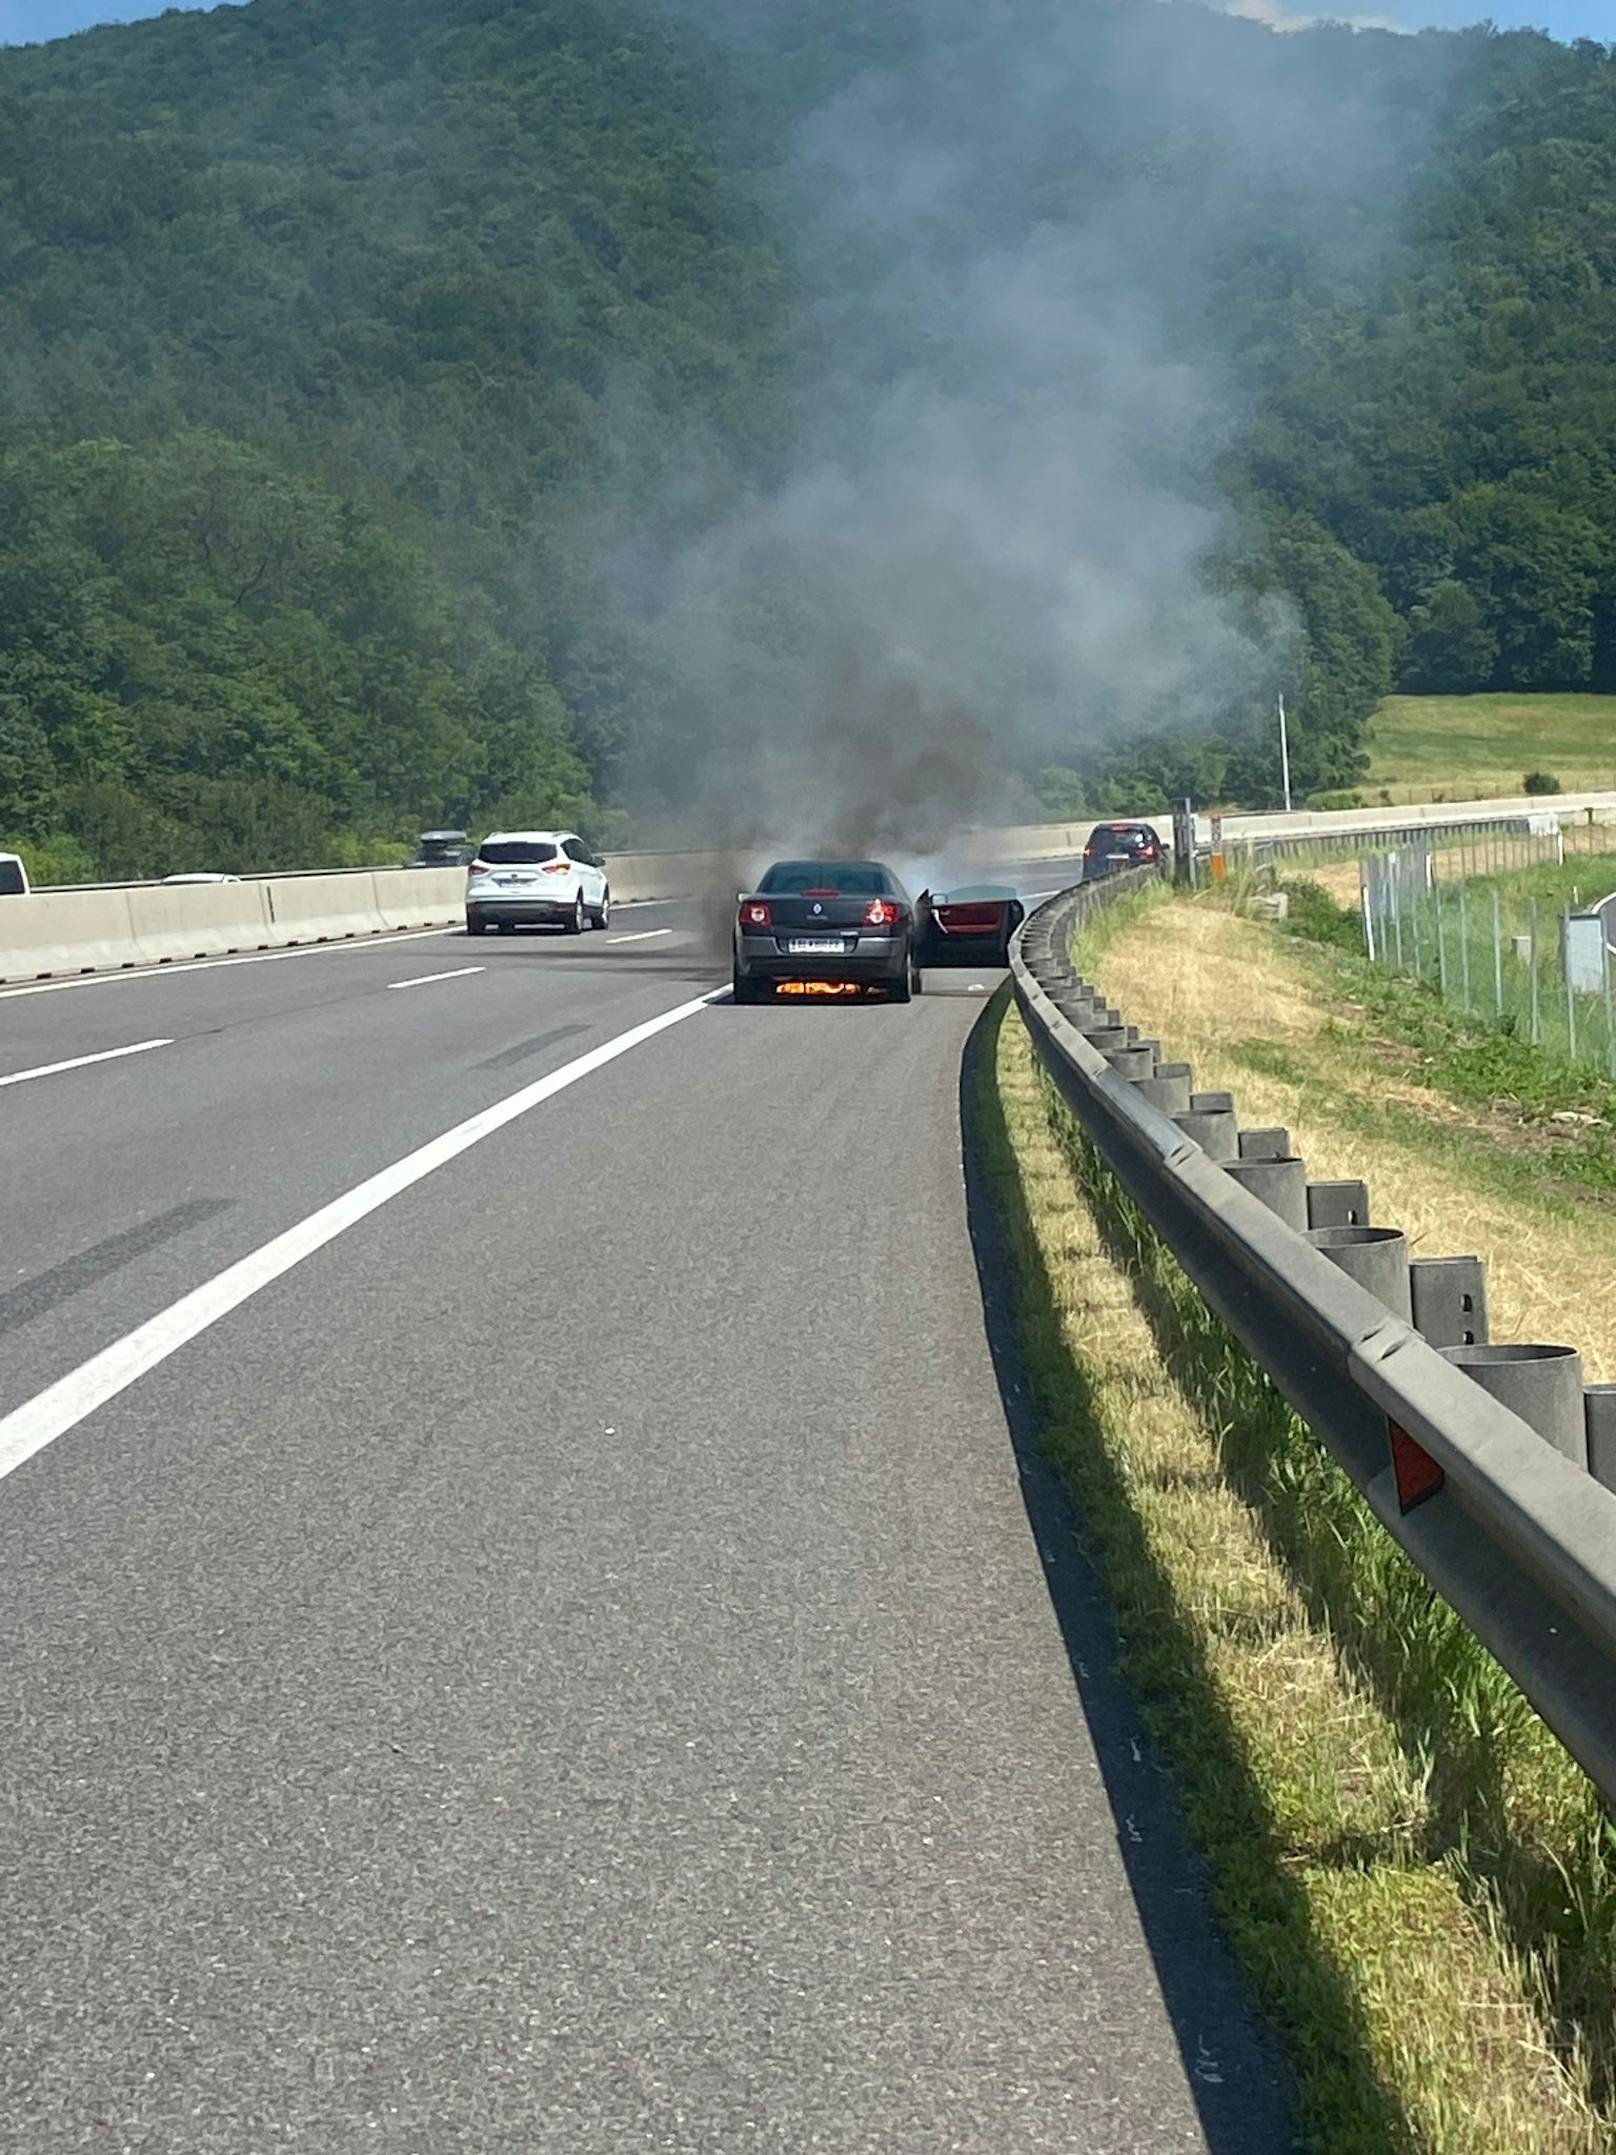 Mitten auf der Autobahn fing ein Fahrzeug plötzlich zu brennen an.